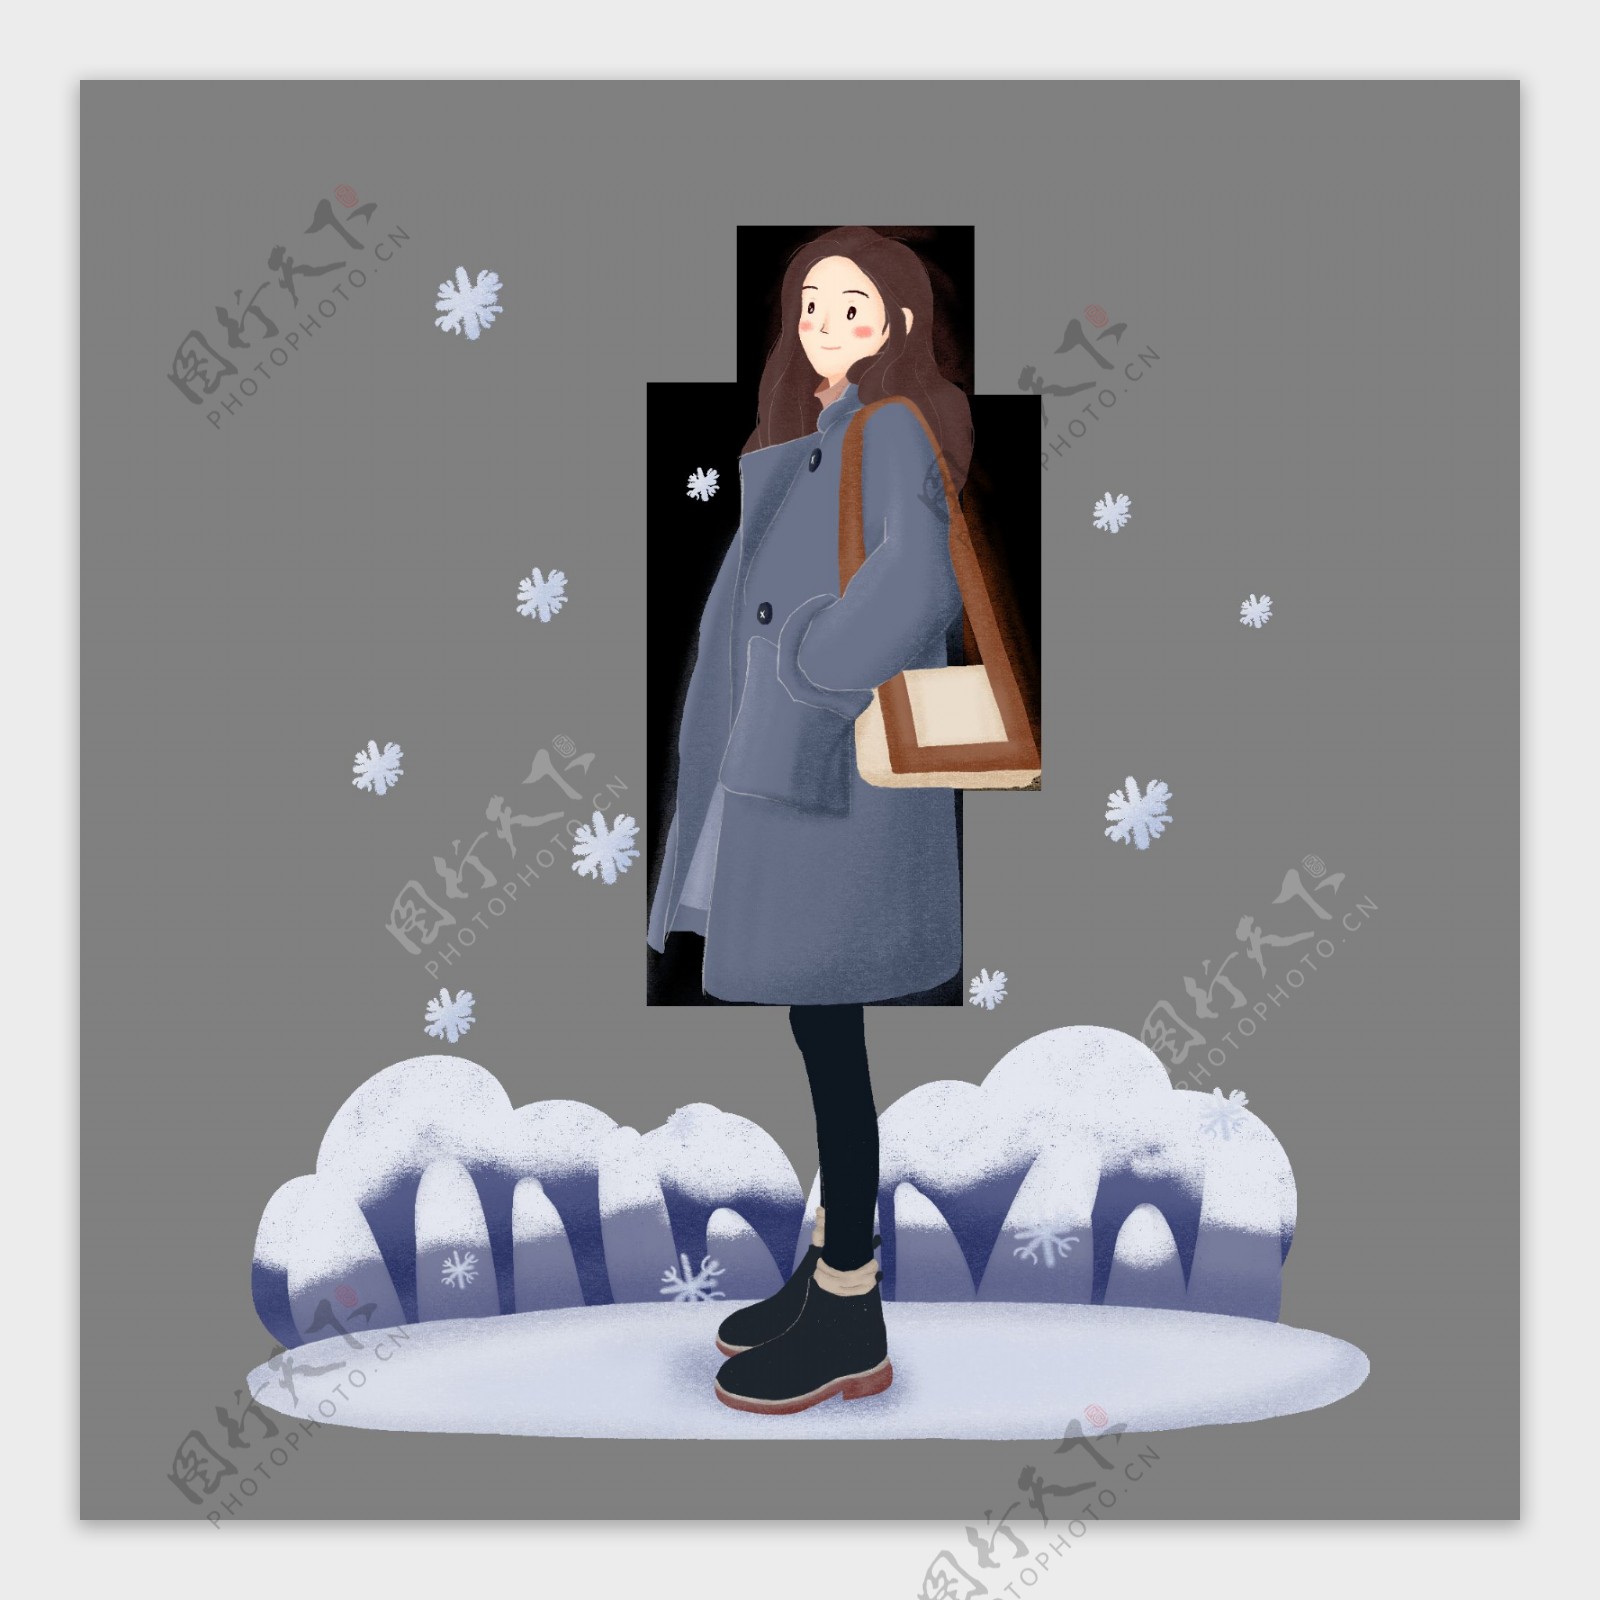 手绘冬季下雪女孩看雪人物场景素材